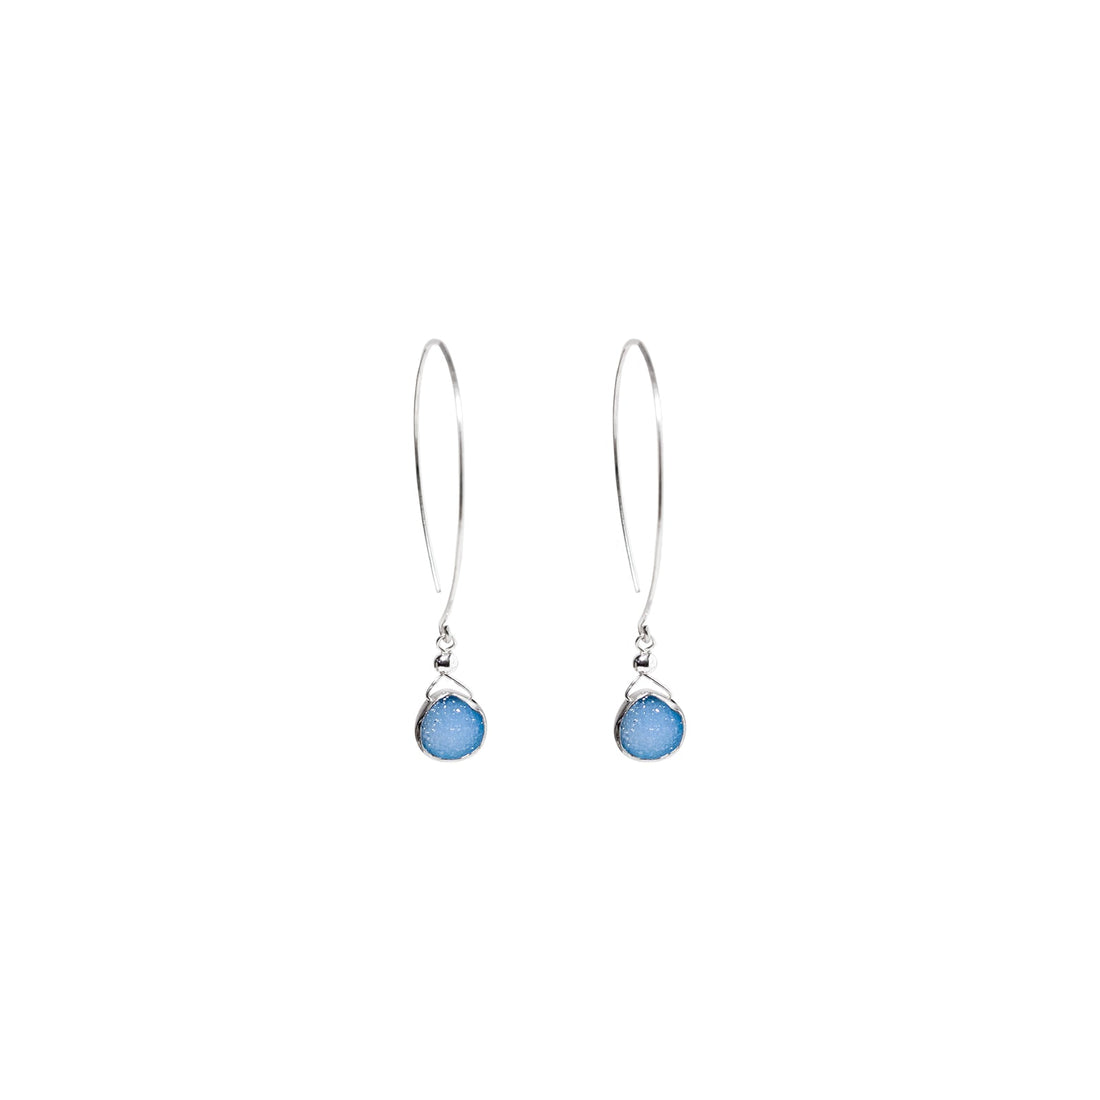 Kelly Earrings, Blue Druzy Pear with Classic Silver Bezel Earrings Sayulita Sol 